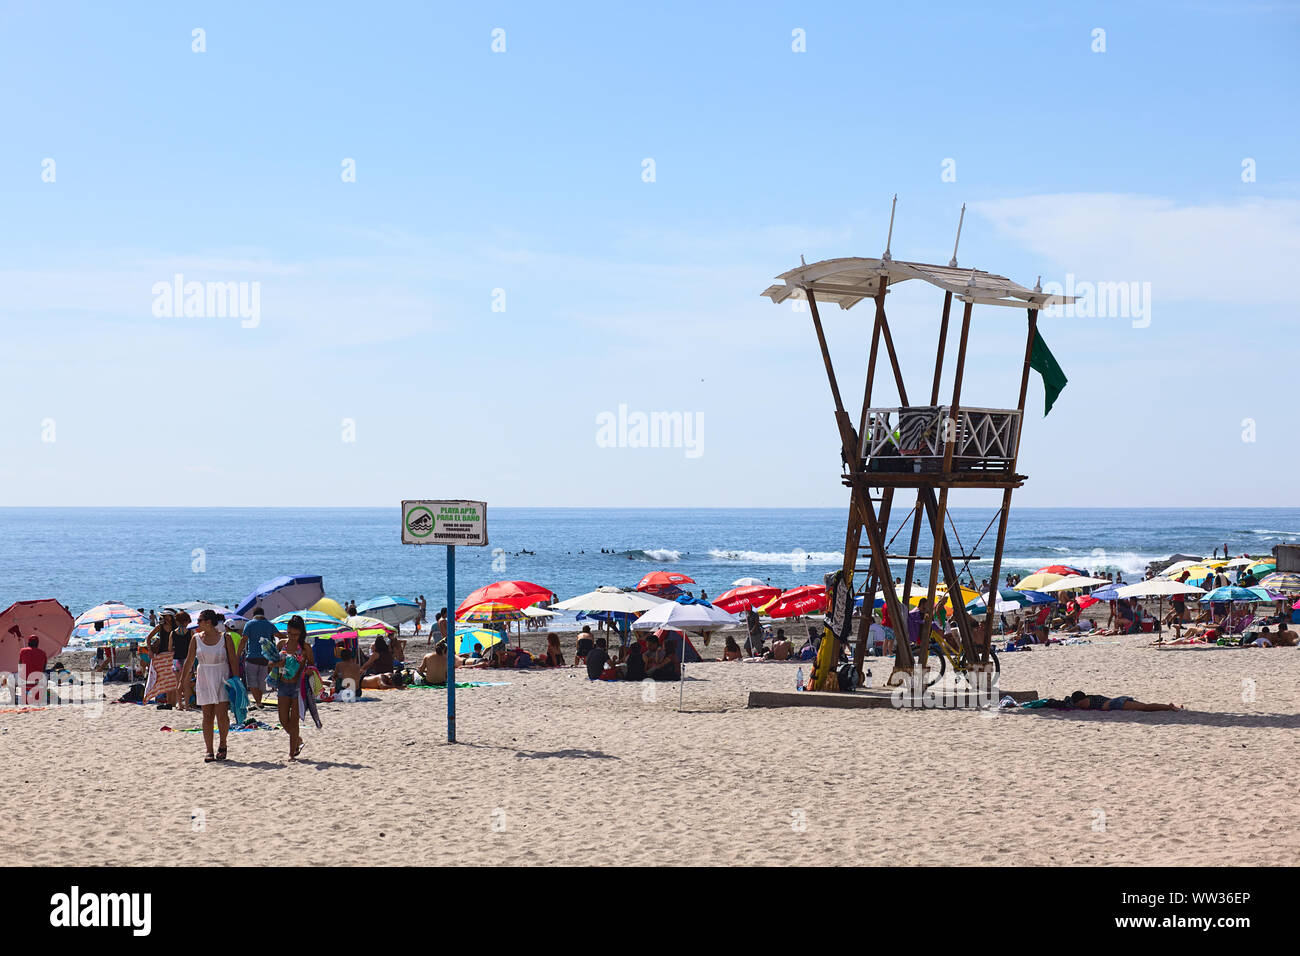 IQUIQUE, CHILI - 23 janvier 2015 : tour de sauveteur, de parasols et de nombreux visiteurs sur Cavancha Beach le 23 janvier 2015 à Iquique, Chili. Banque D'Images